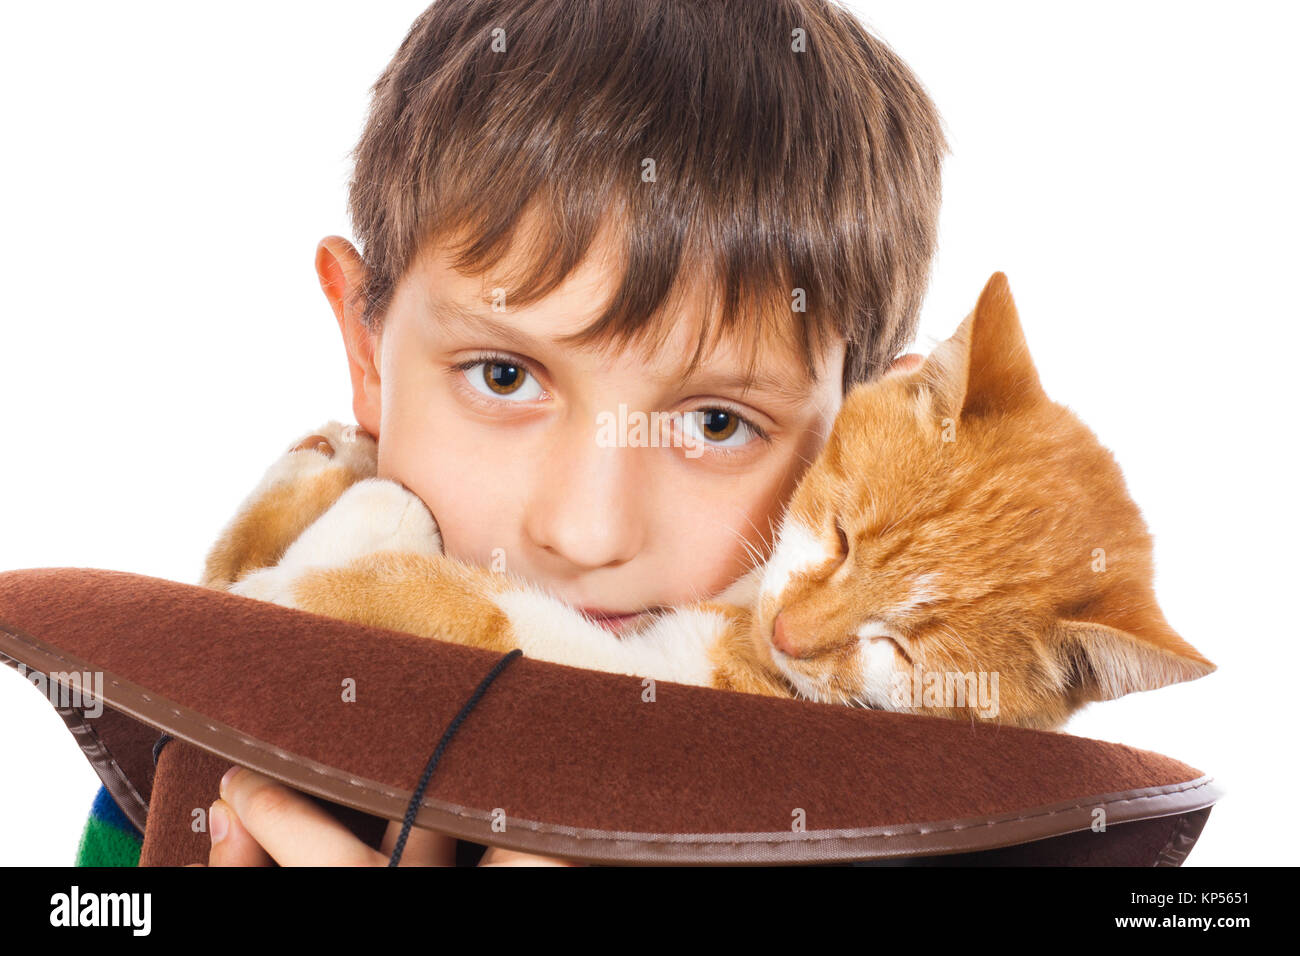 Junge und sein Liebling rote Katze im Hut. Auf weiß Isoliert Stockfoto